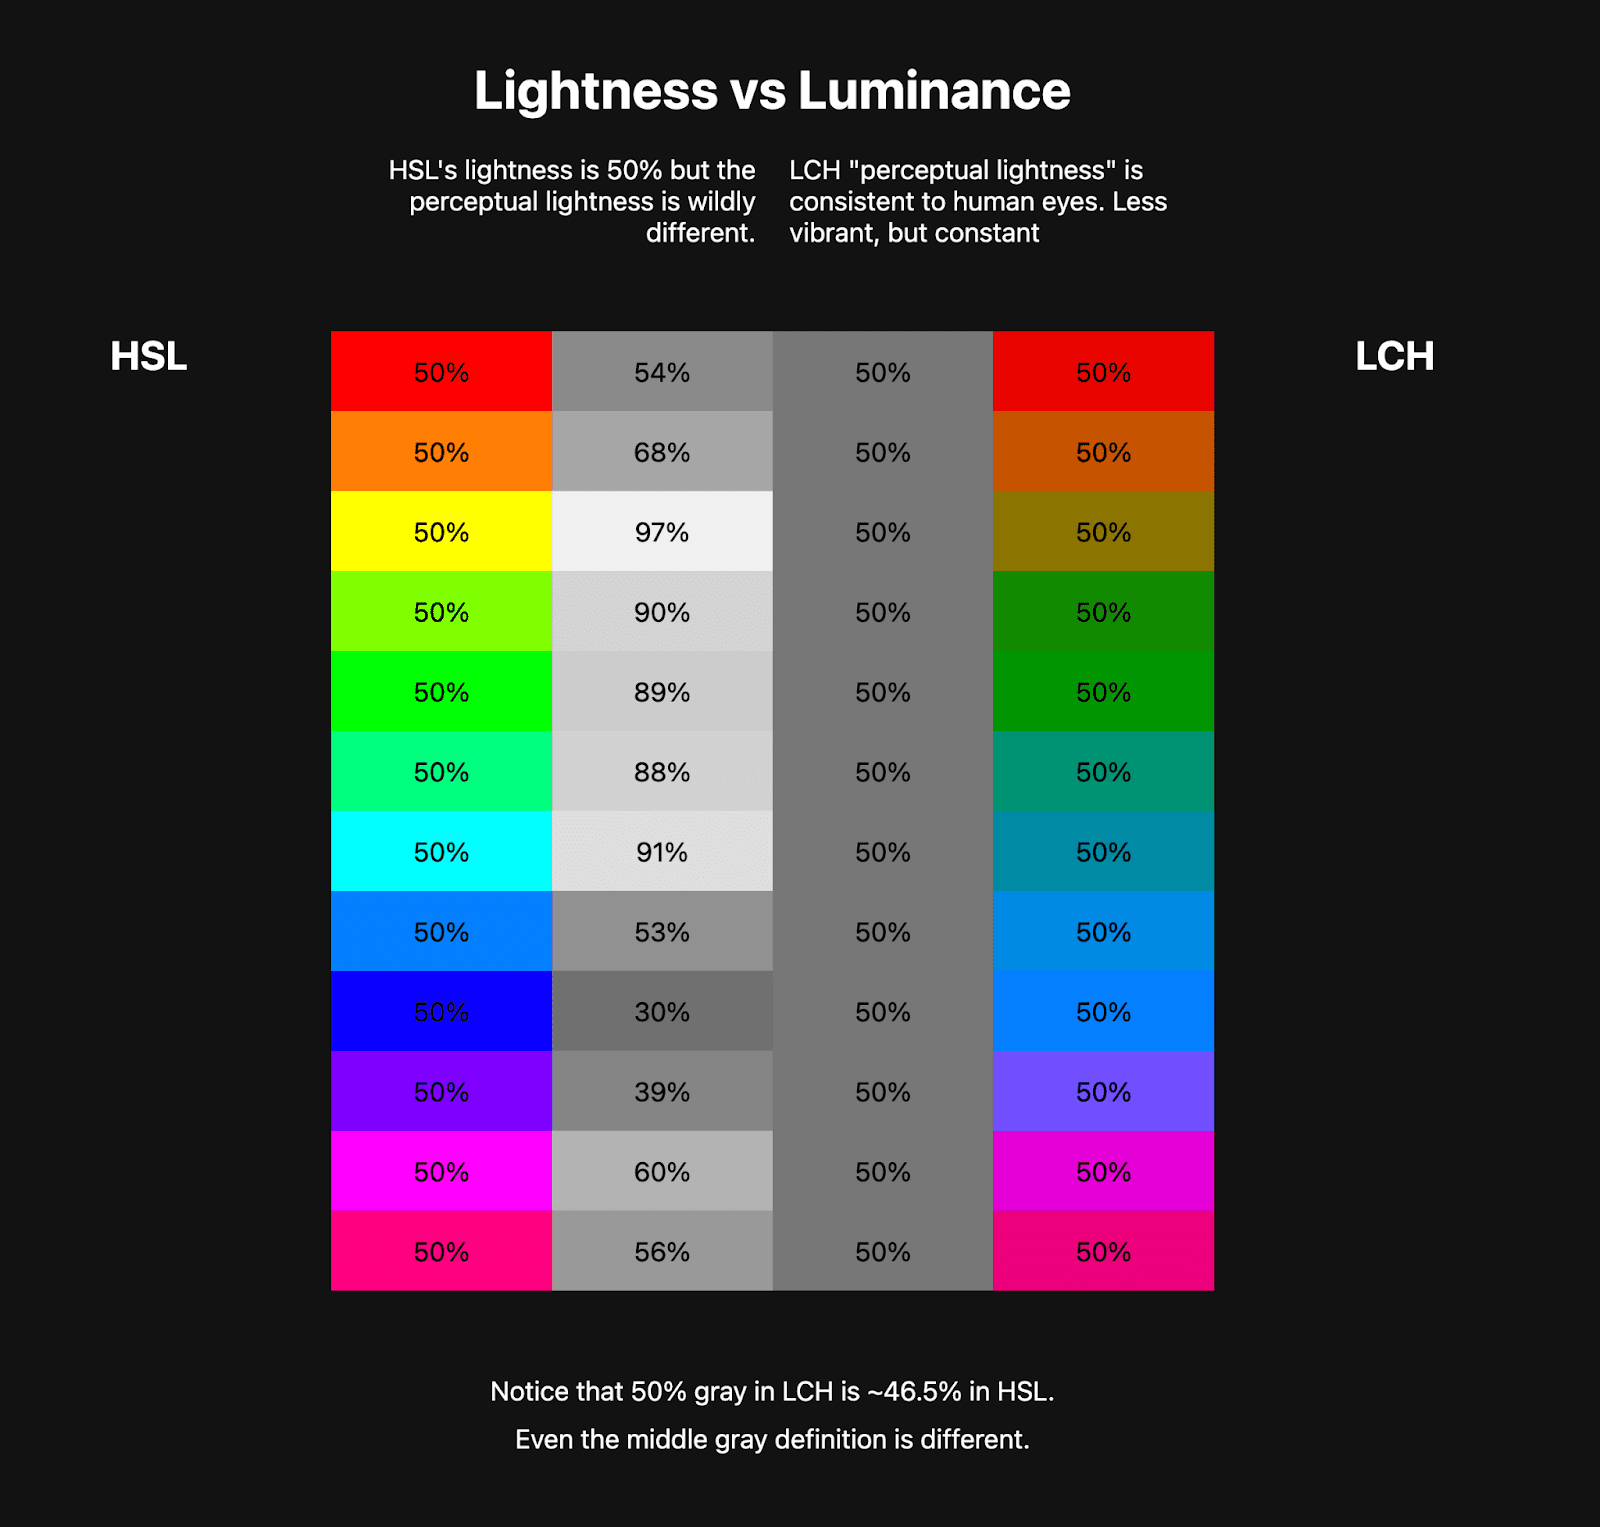 ตารางสี 2 ตารางแสดงคู่กัน ตารางแรกแสดง HSL รุ้งประมาณ 10 สีโดยประมาณ และถัดจากตารางเป็นสีโทนสีเทาที่แสดงถึงความอ่อนของสี HSL เหล่านั้น ตารางที่ 2 แสดง LCH สีรุ้งสดใสน้อยกว่ามาก แต่สีโทนสีเทาที่อยู่ข้างๆ จะสม่ำเสมอกัน
    นี่เป็นการแสดงให้เห็นว่า LCH มีค่าความสว่างคงที่อย่างไร ในขณะที่ HSL ไม่มี